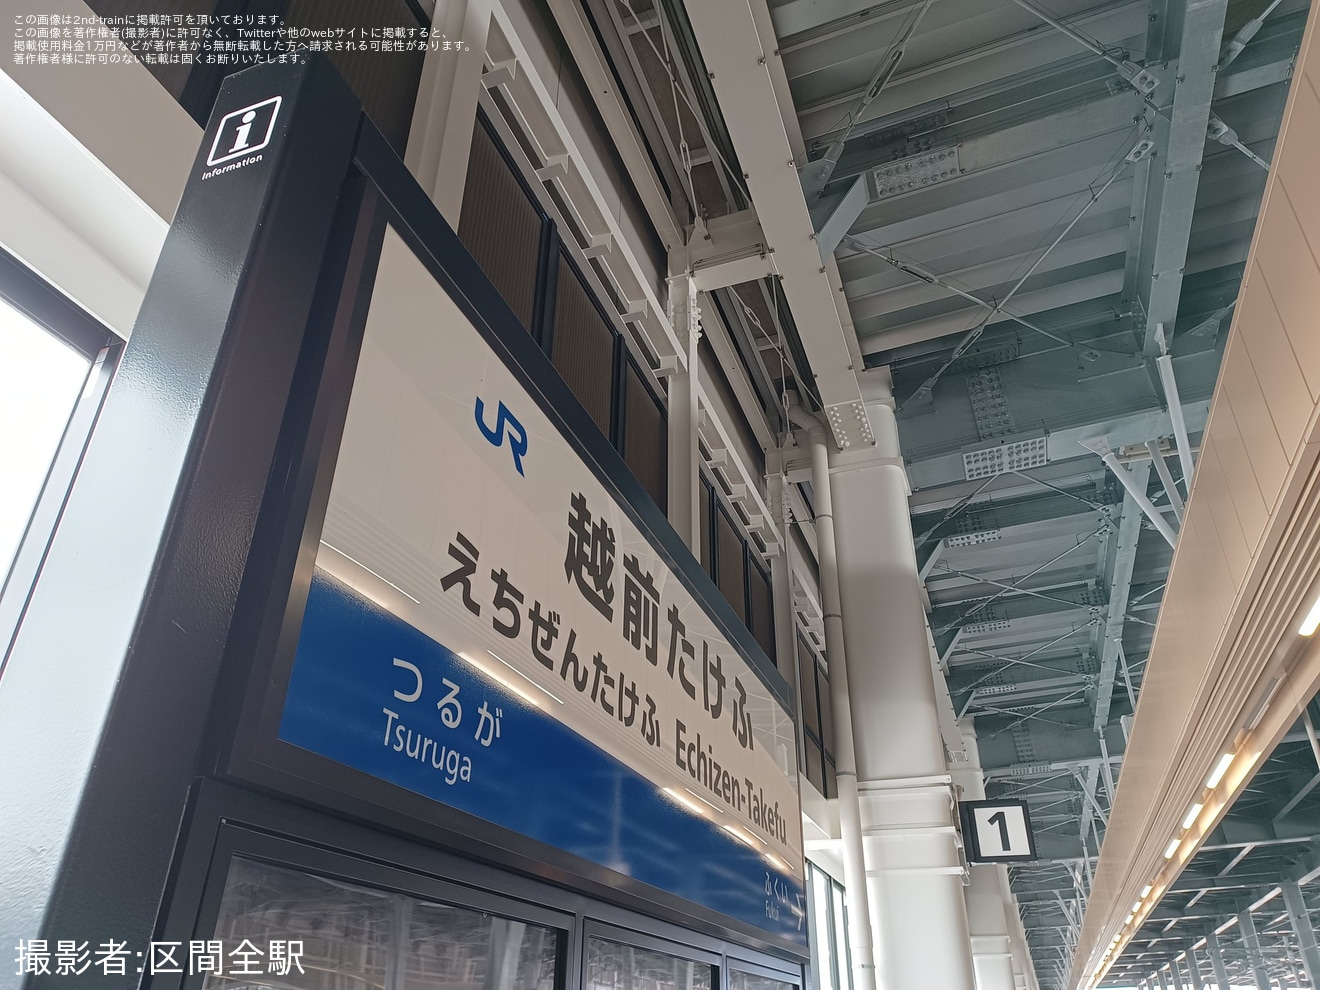 【JR西】「北陸新幹線越前たけふ駅内覧会」開催の拡大写真